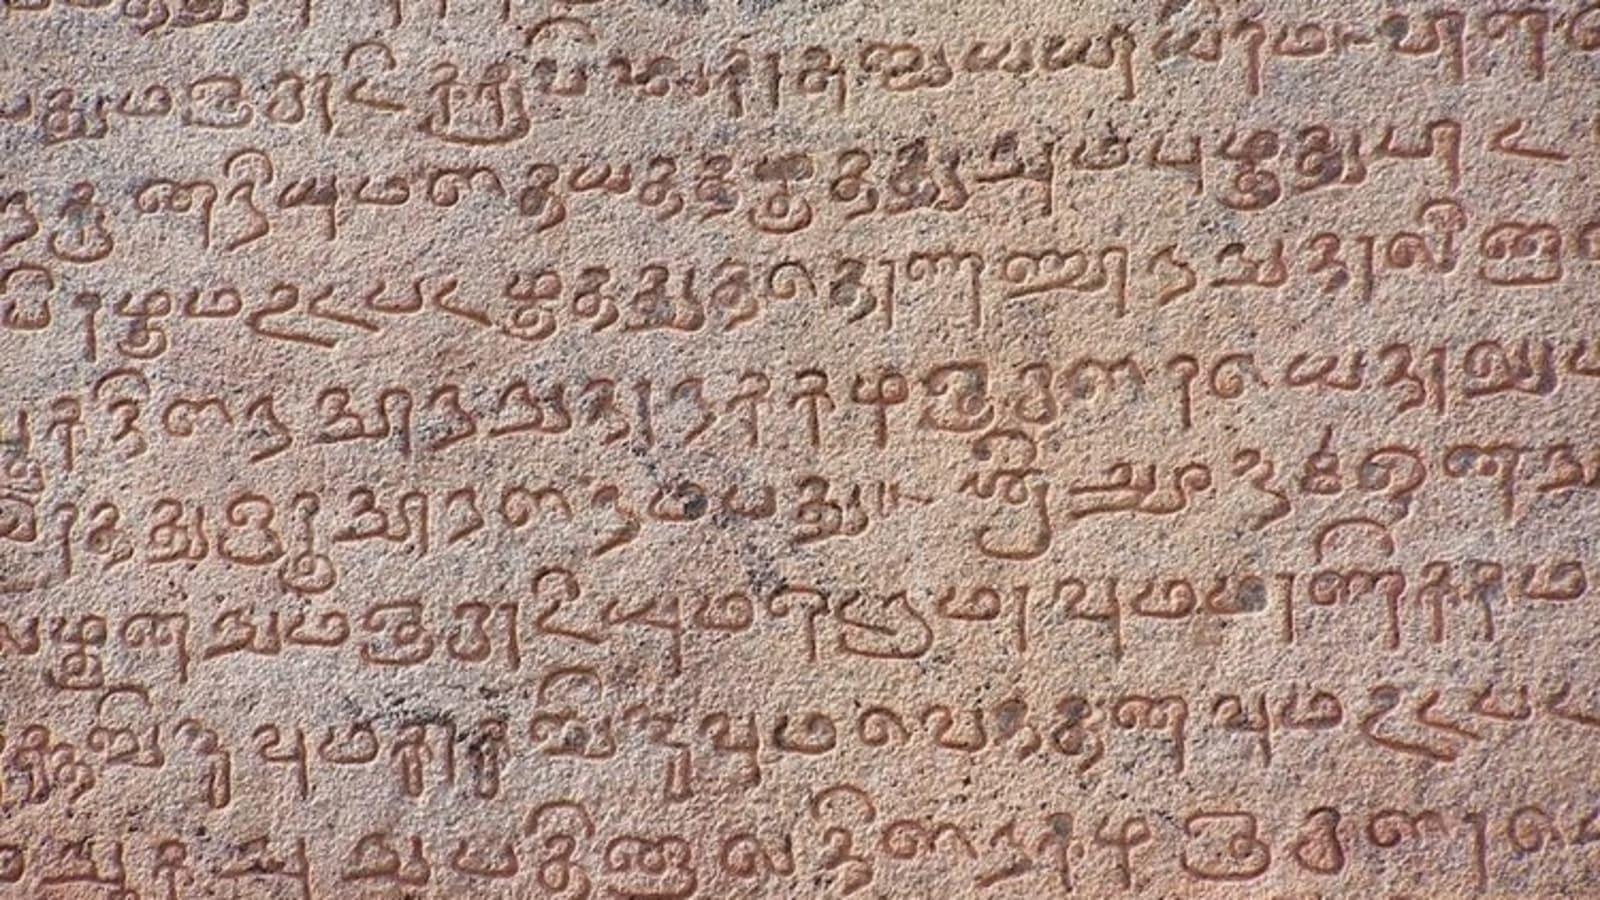 Инди язык. Брахми письменность. Тамильская письменность. Индийская письменность. Письмо Брахми.